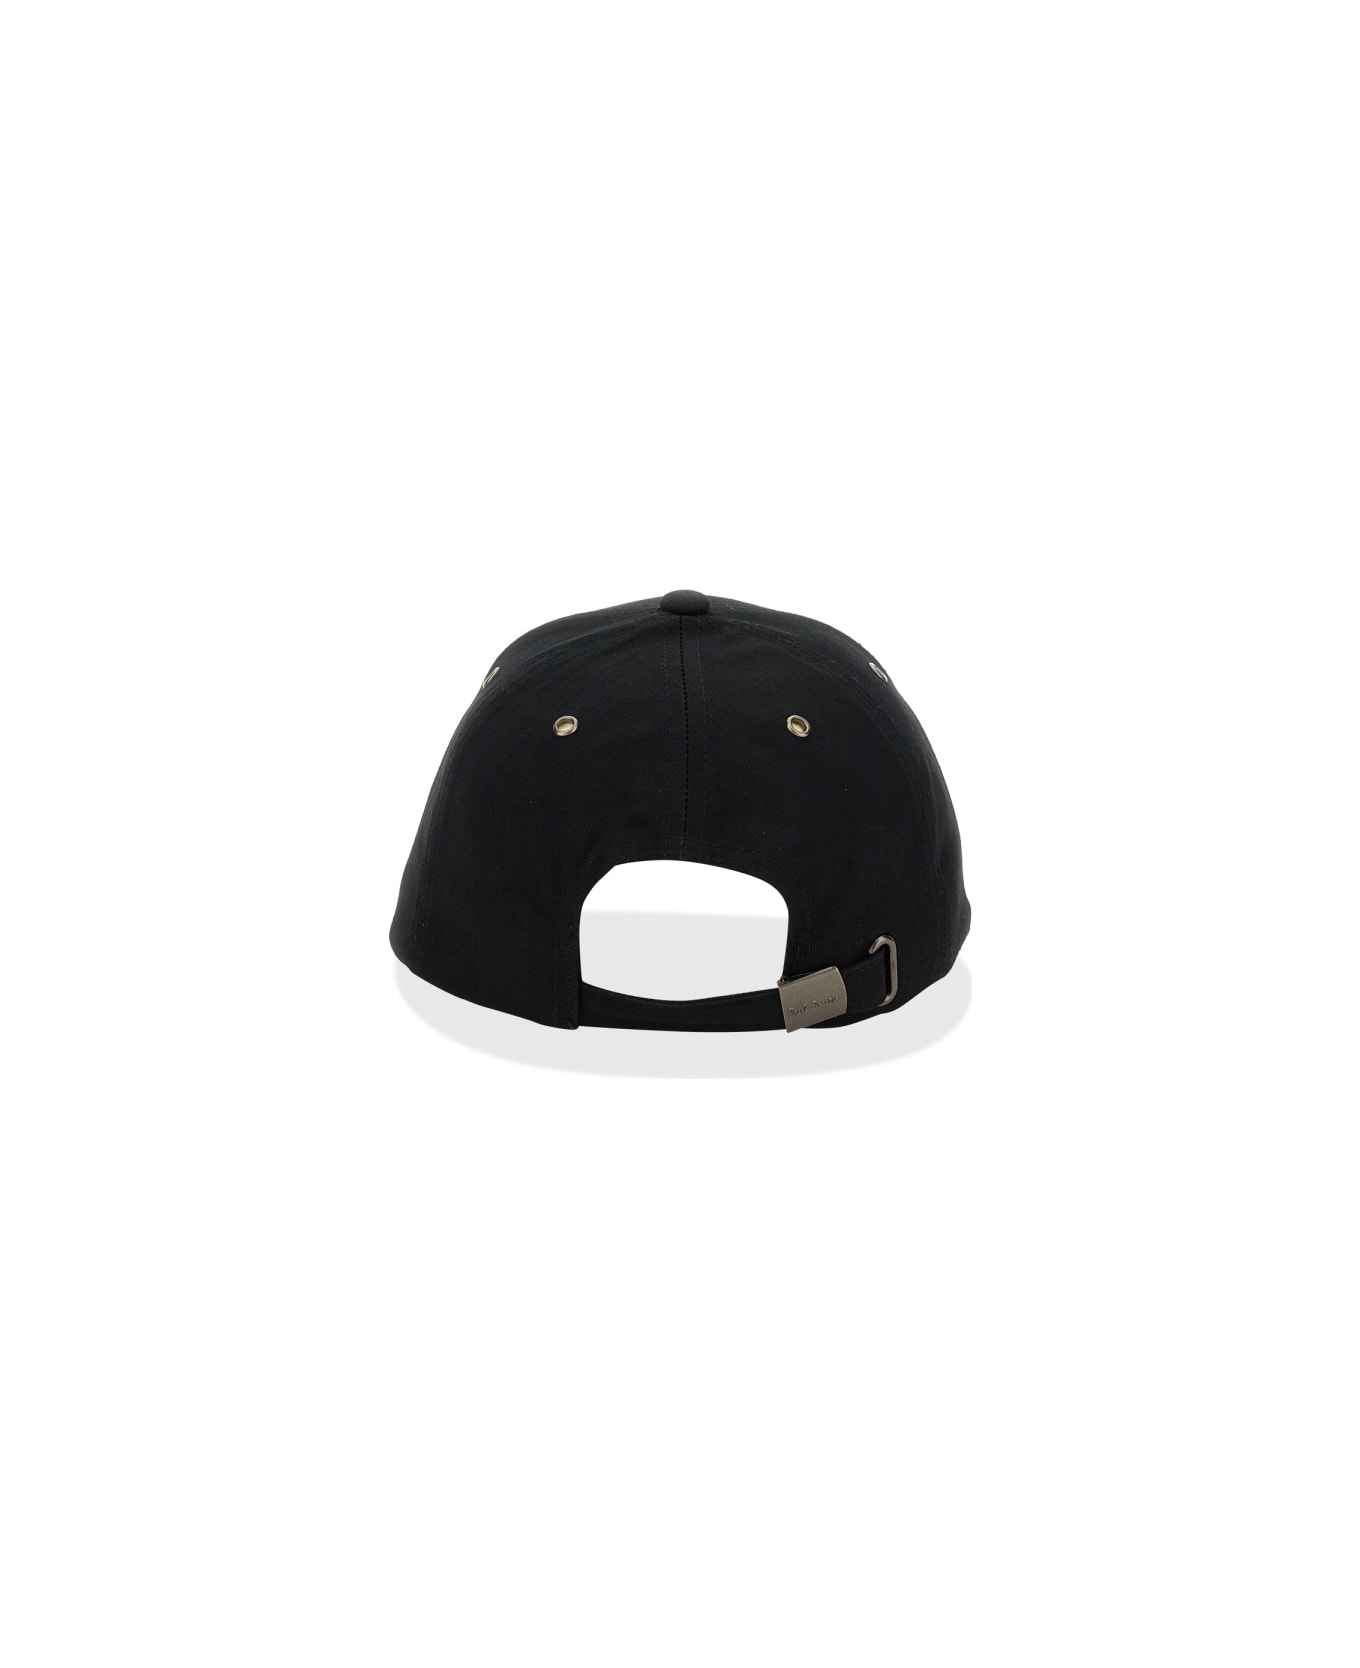 Paul Smith Baseball Cap - BLACK 帽子